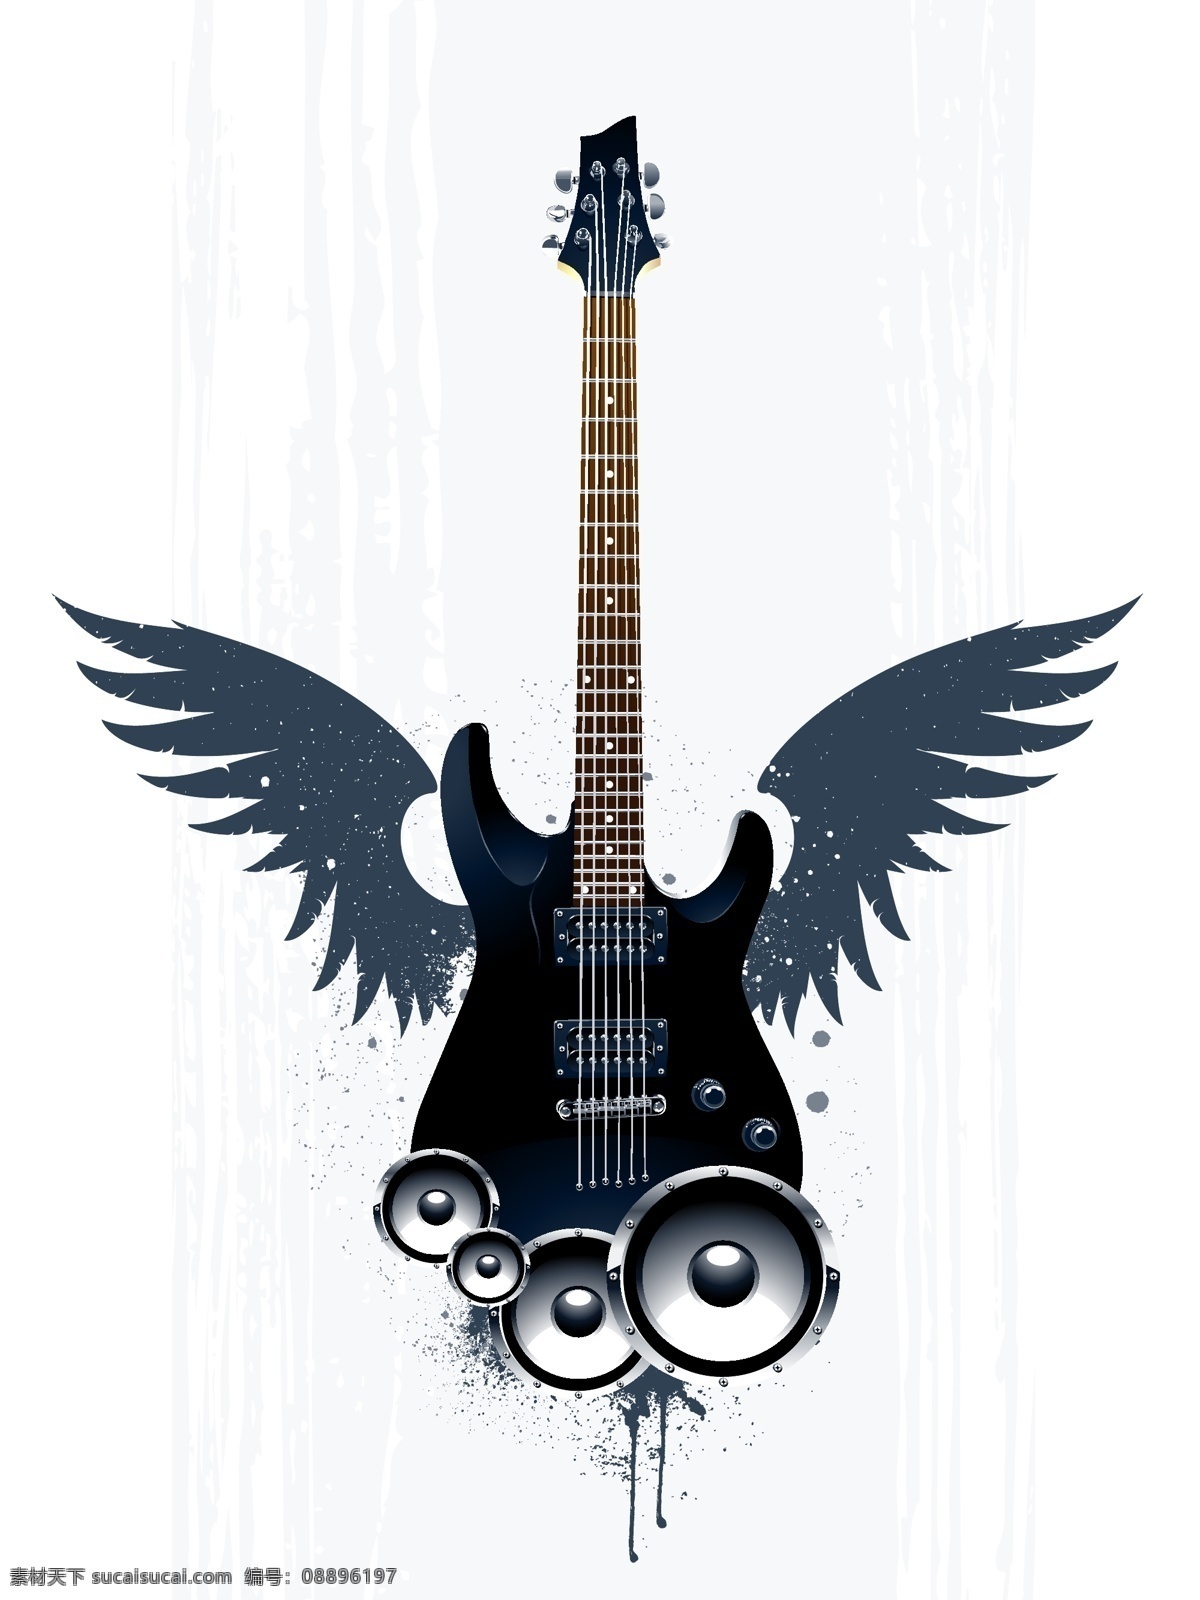 吉他 音响 矢量图 麦克风 翅膀 双翼 吉他乐器 摇滚音乐 音乐海报 影音娱乐 生活百科 矢量素材 白色